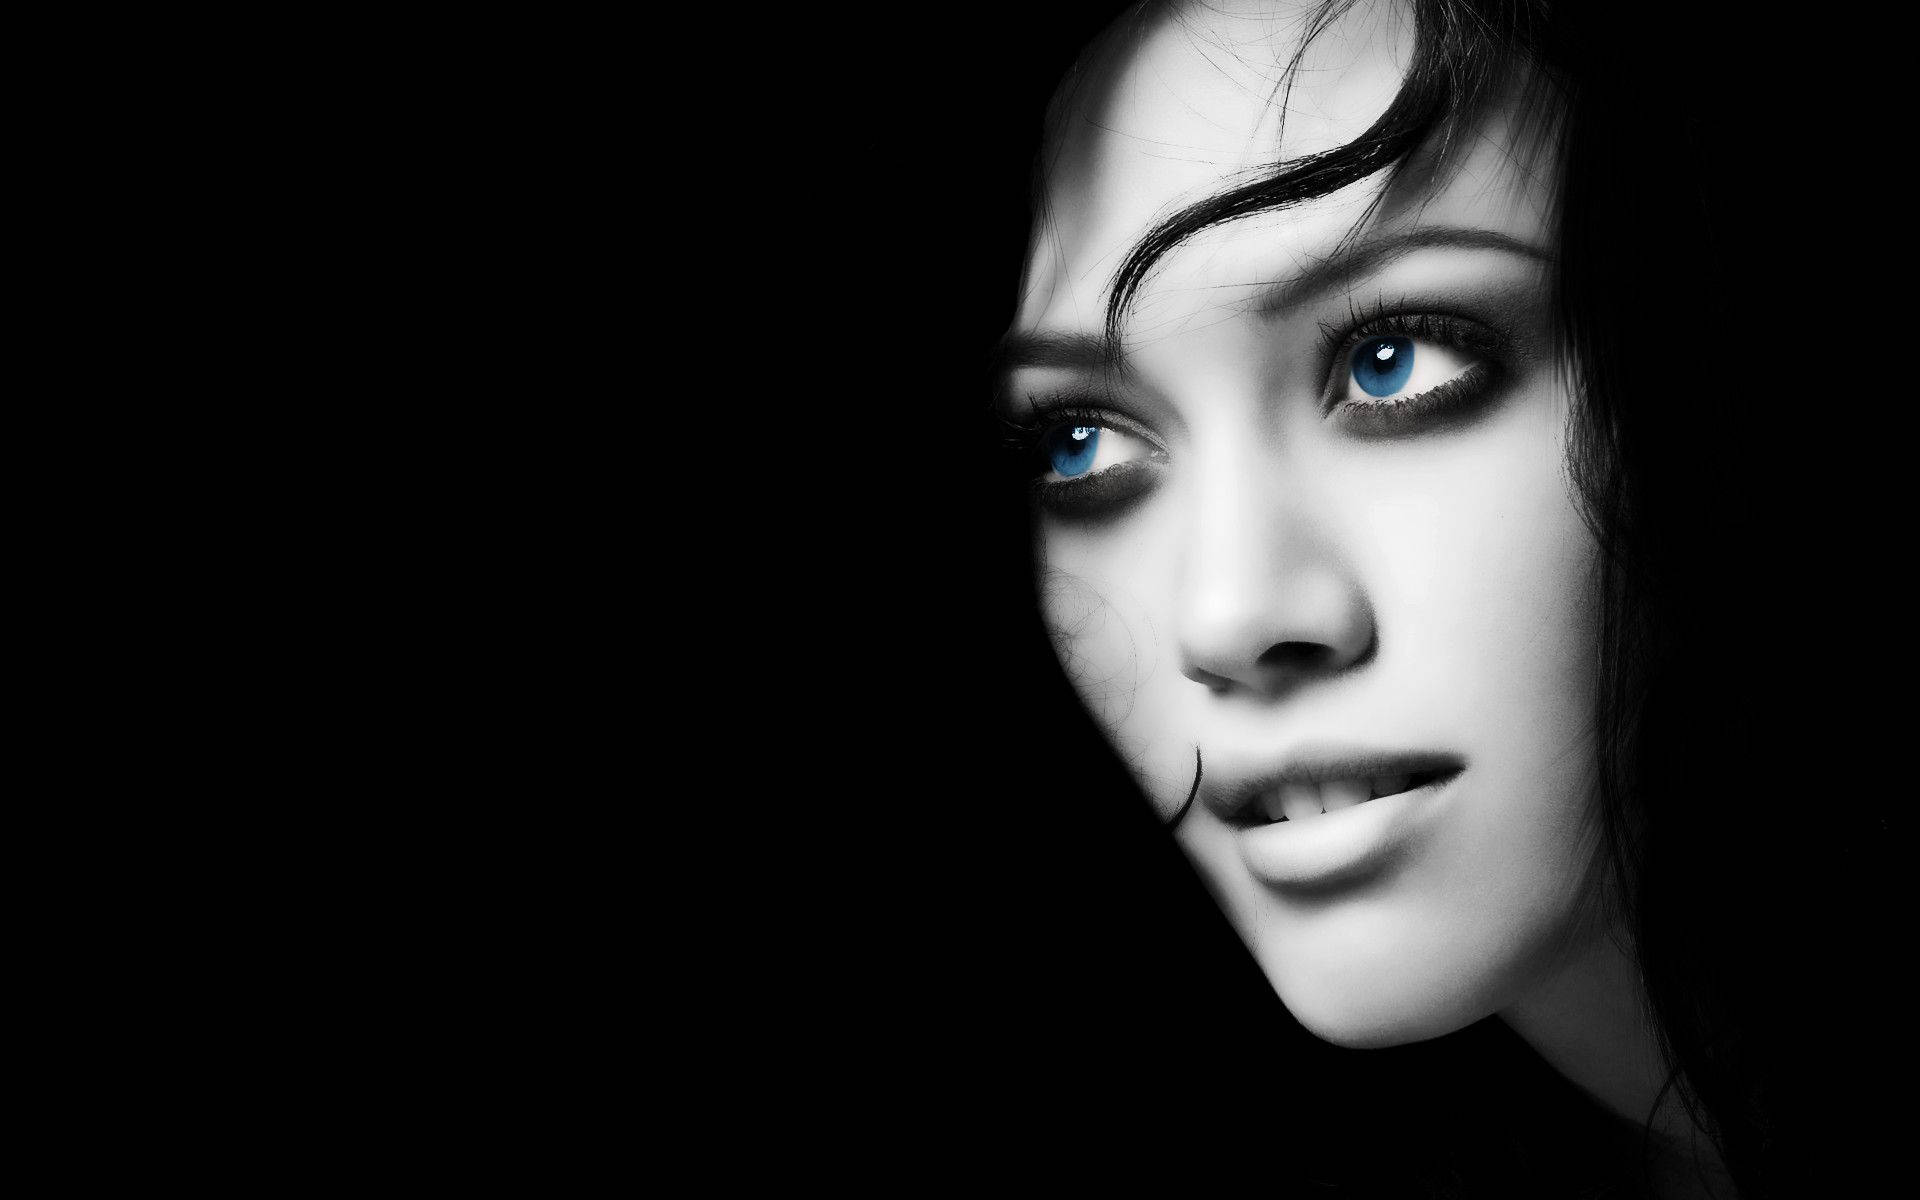 Dark Girl Looking With Blue Eyes Wallpaper